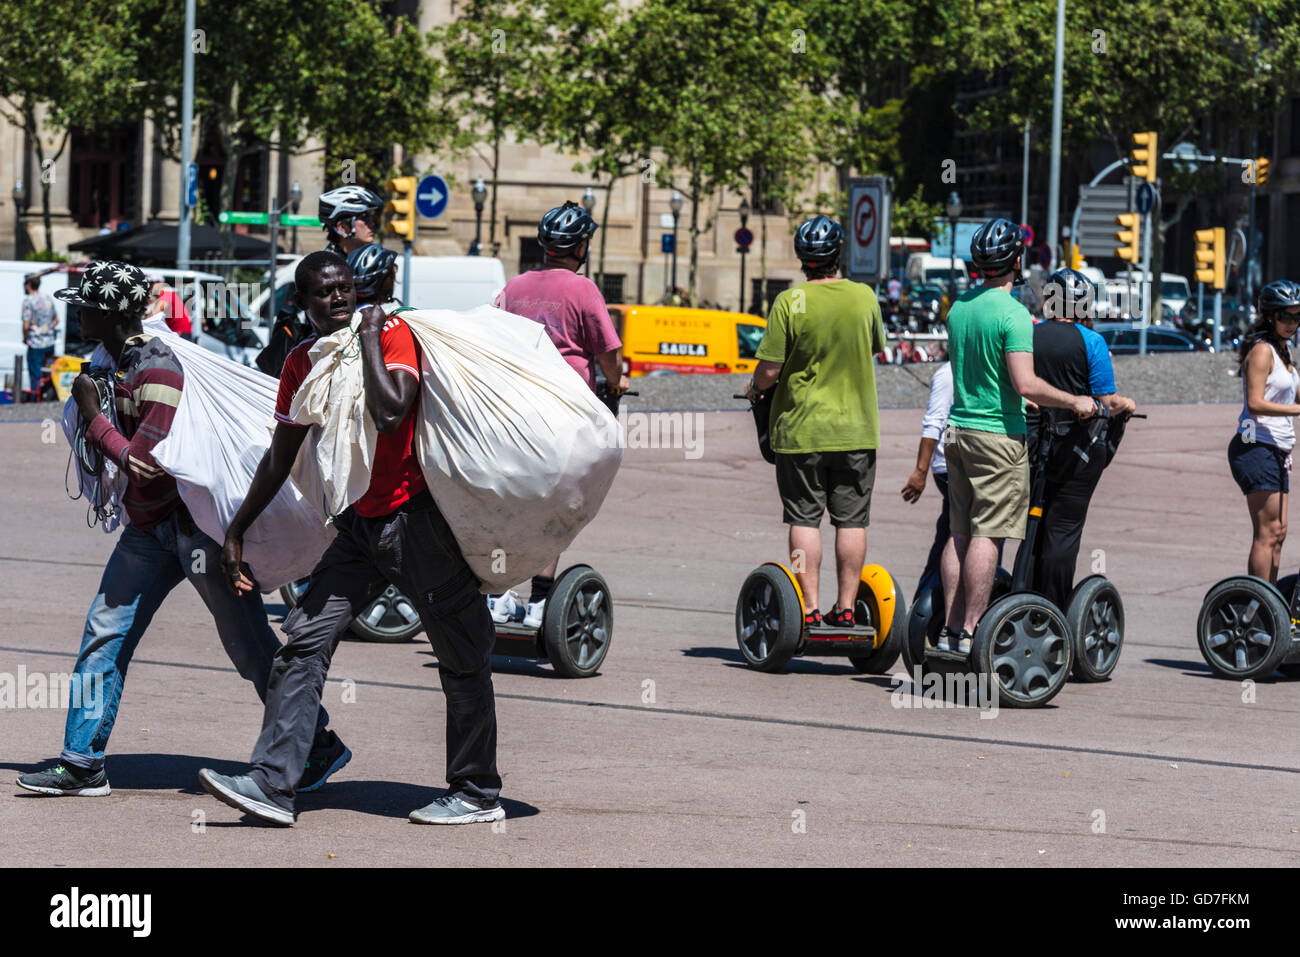 Deux vendeurs noire transportant des marchandises dans un sac appelé manteros entre les touristes sur un Segway dans le centre de Barcelone Banque D'Images